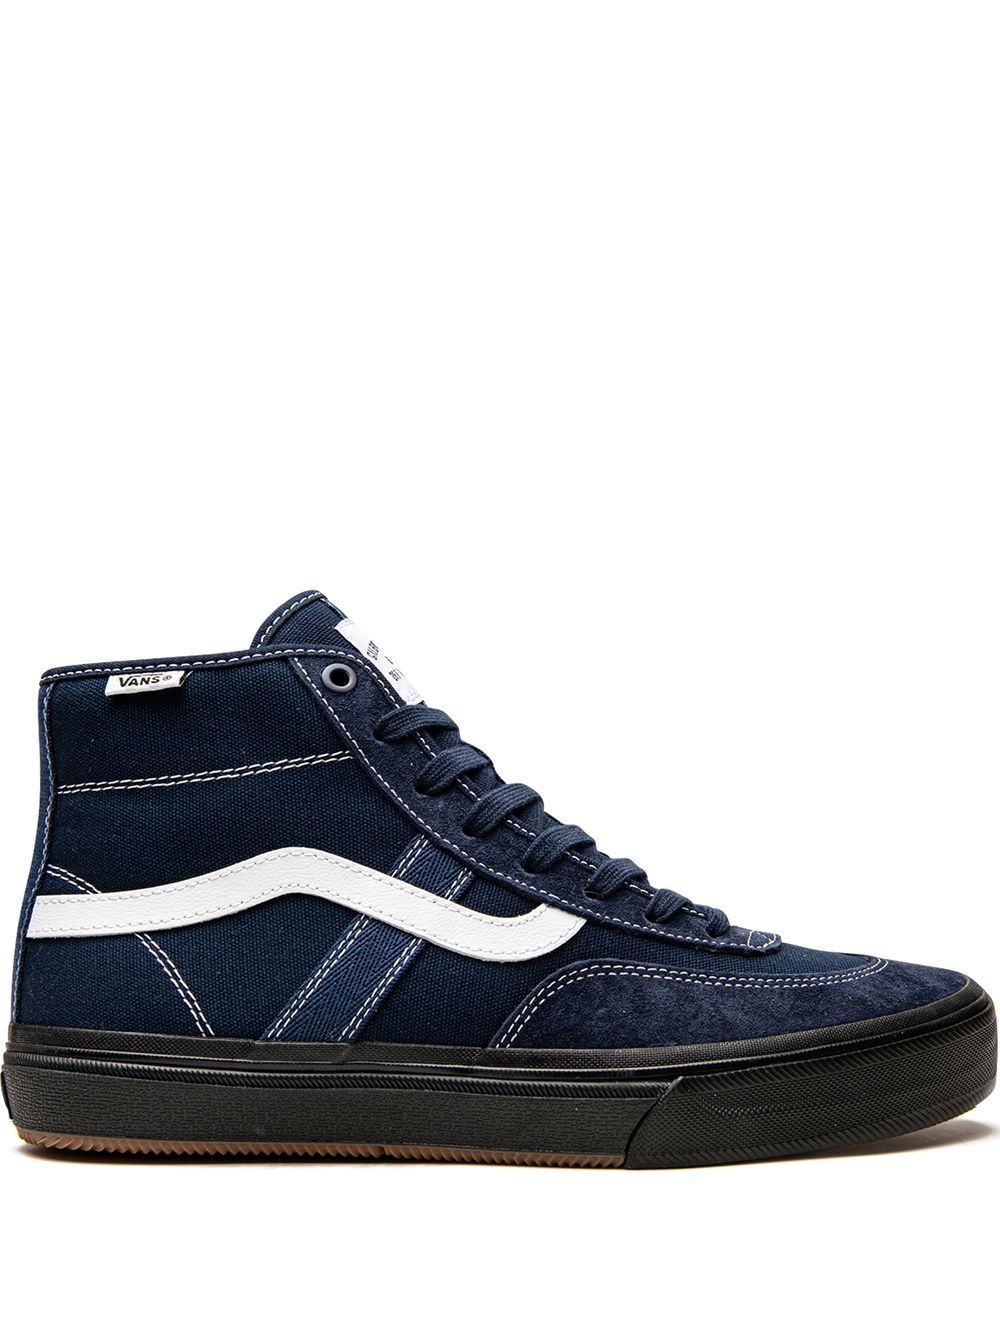 Vans Crockett High VCU sneakers - Blue von Vans